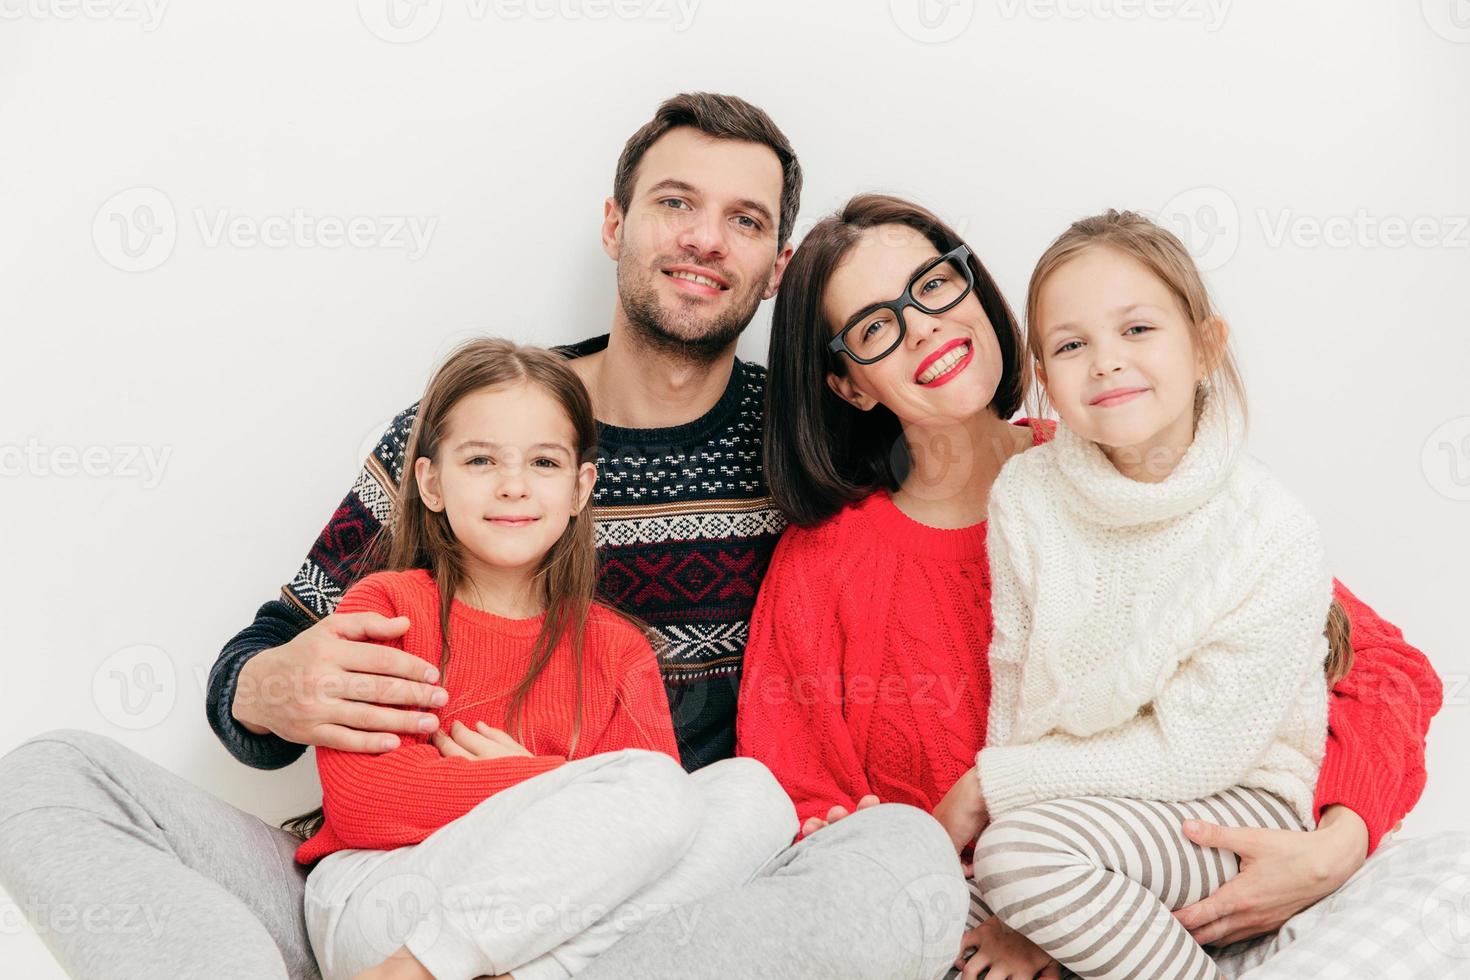 mãe de retrato de família, pai e duas irmãs olham diretamente para a câmera, têm expressões positivas, abraçam-se e sorriem alegremente, isolados no fundo branco. tiro de estúdio. relação foto